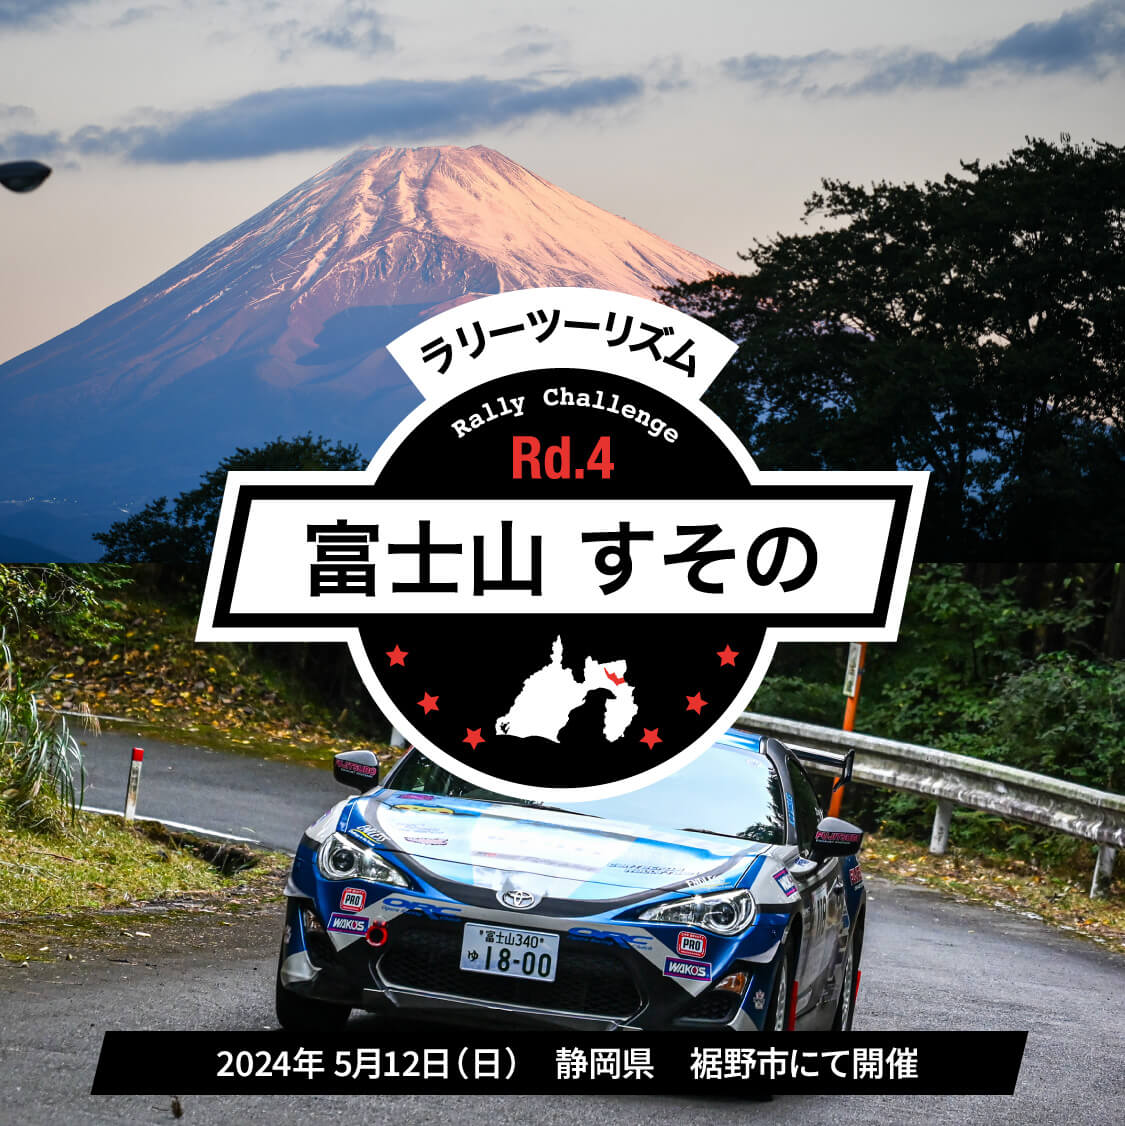 ラリーツーリズム Rd.04 富士山 すその 2024年5月12日(日)静岡県 裾野市にて開催